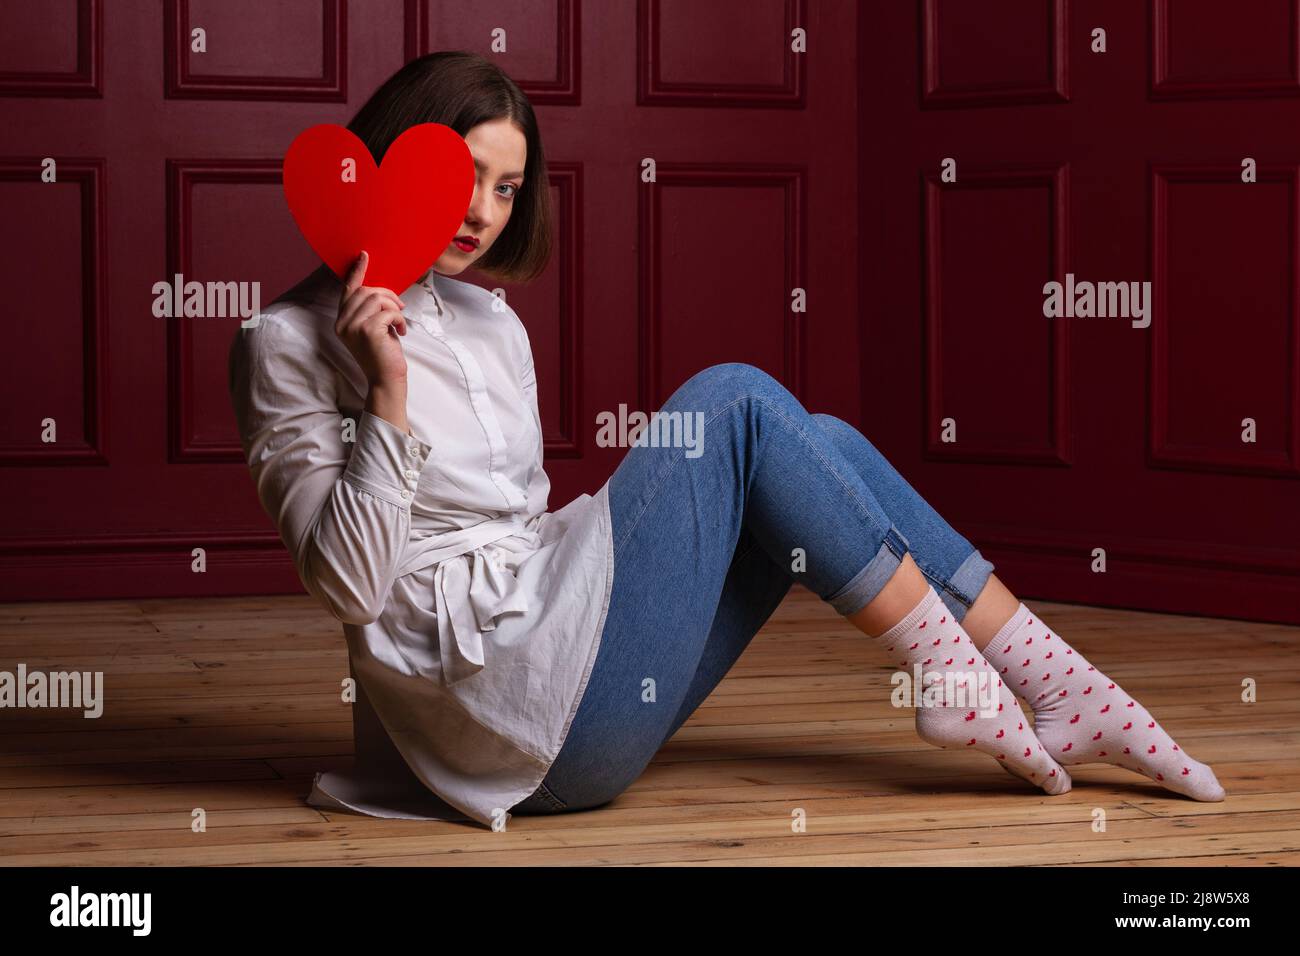 Femme aux cheveux courts assise à côté de l'appareil photo sur un sol en bois et un arrière-plan rouge tenant le coeur rouge devant elle et se cachant le visage derrière elle Banque D'Images